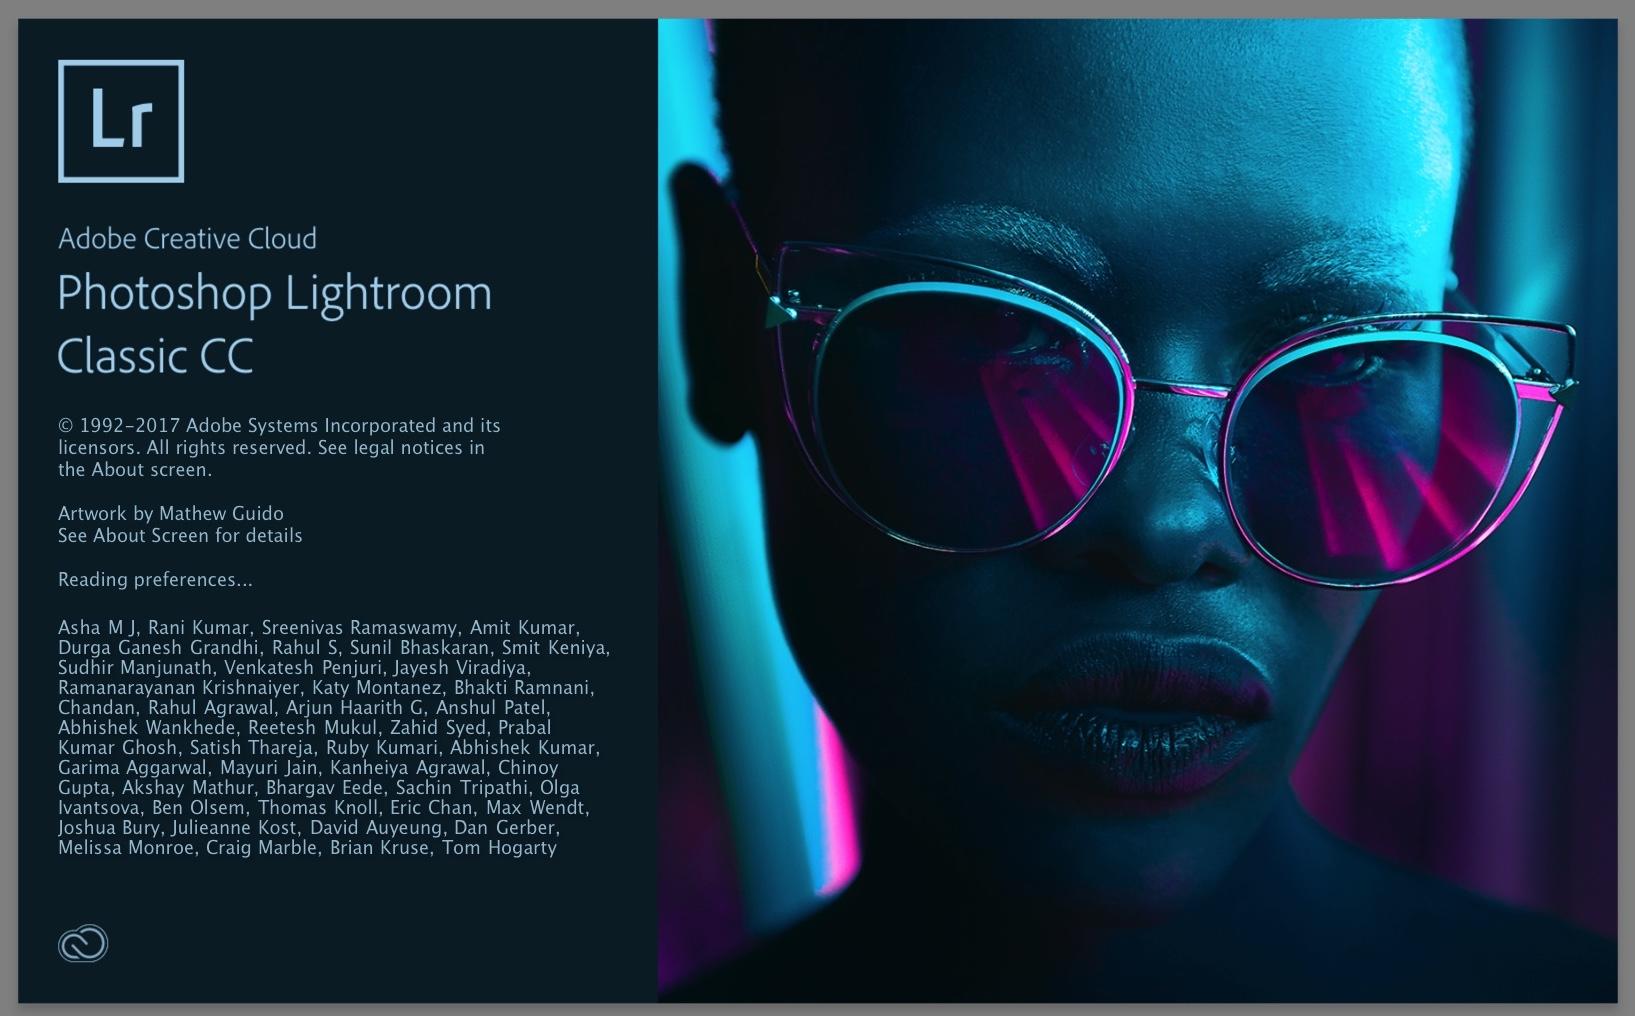 http://thedigitalstory.com/2018/05/29/lightroom-splash.jpg